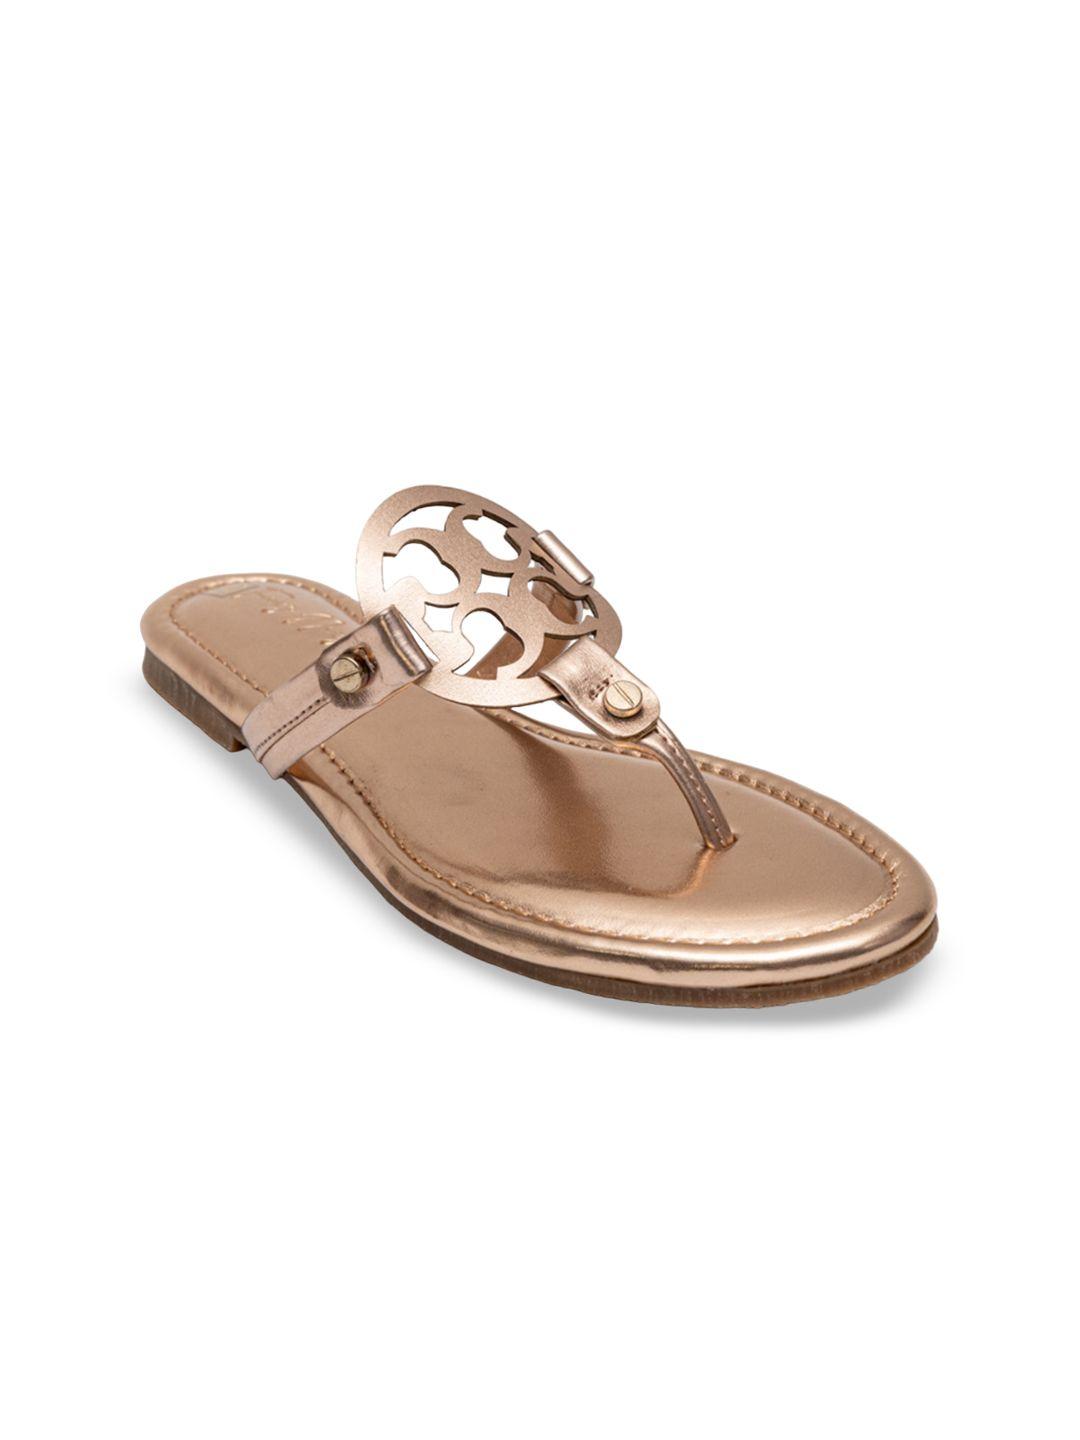 dapper feet-fancy nancy women rose gold embellished open toe flats